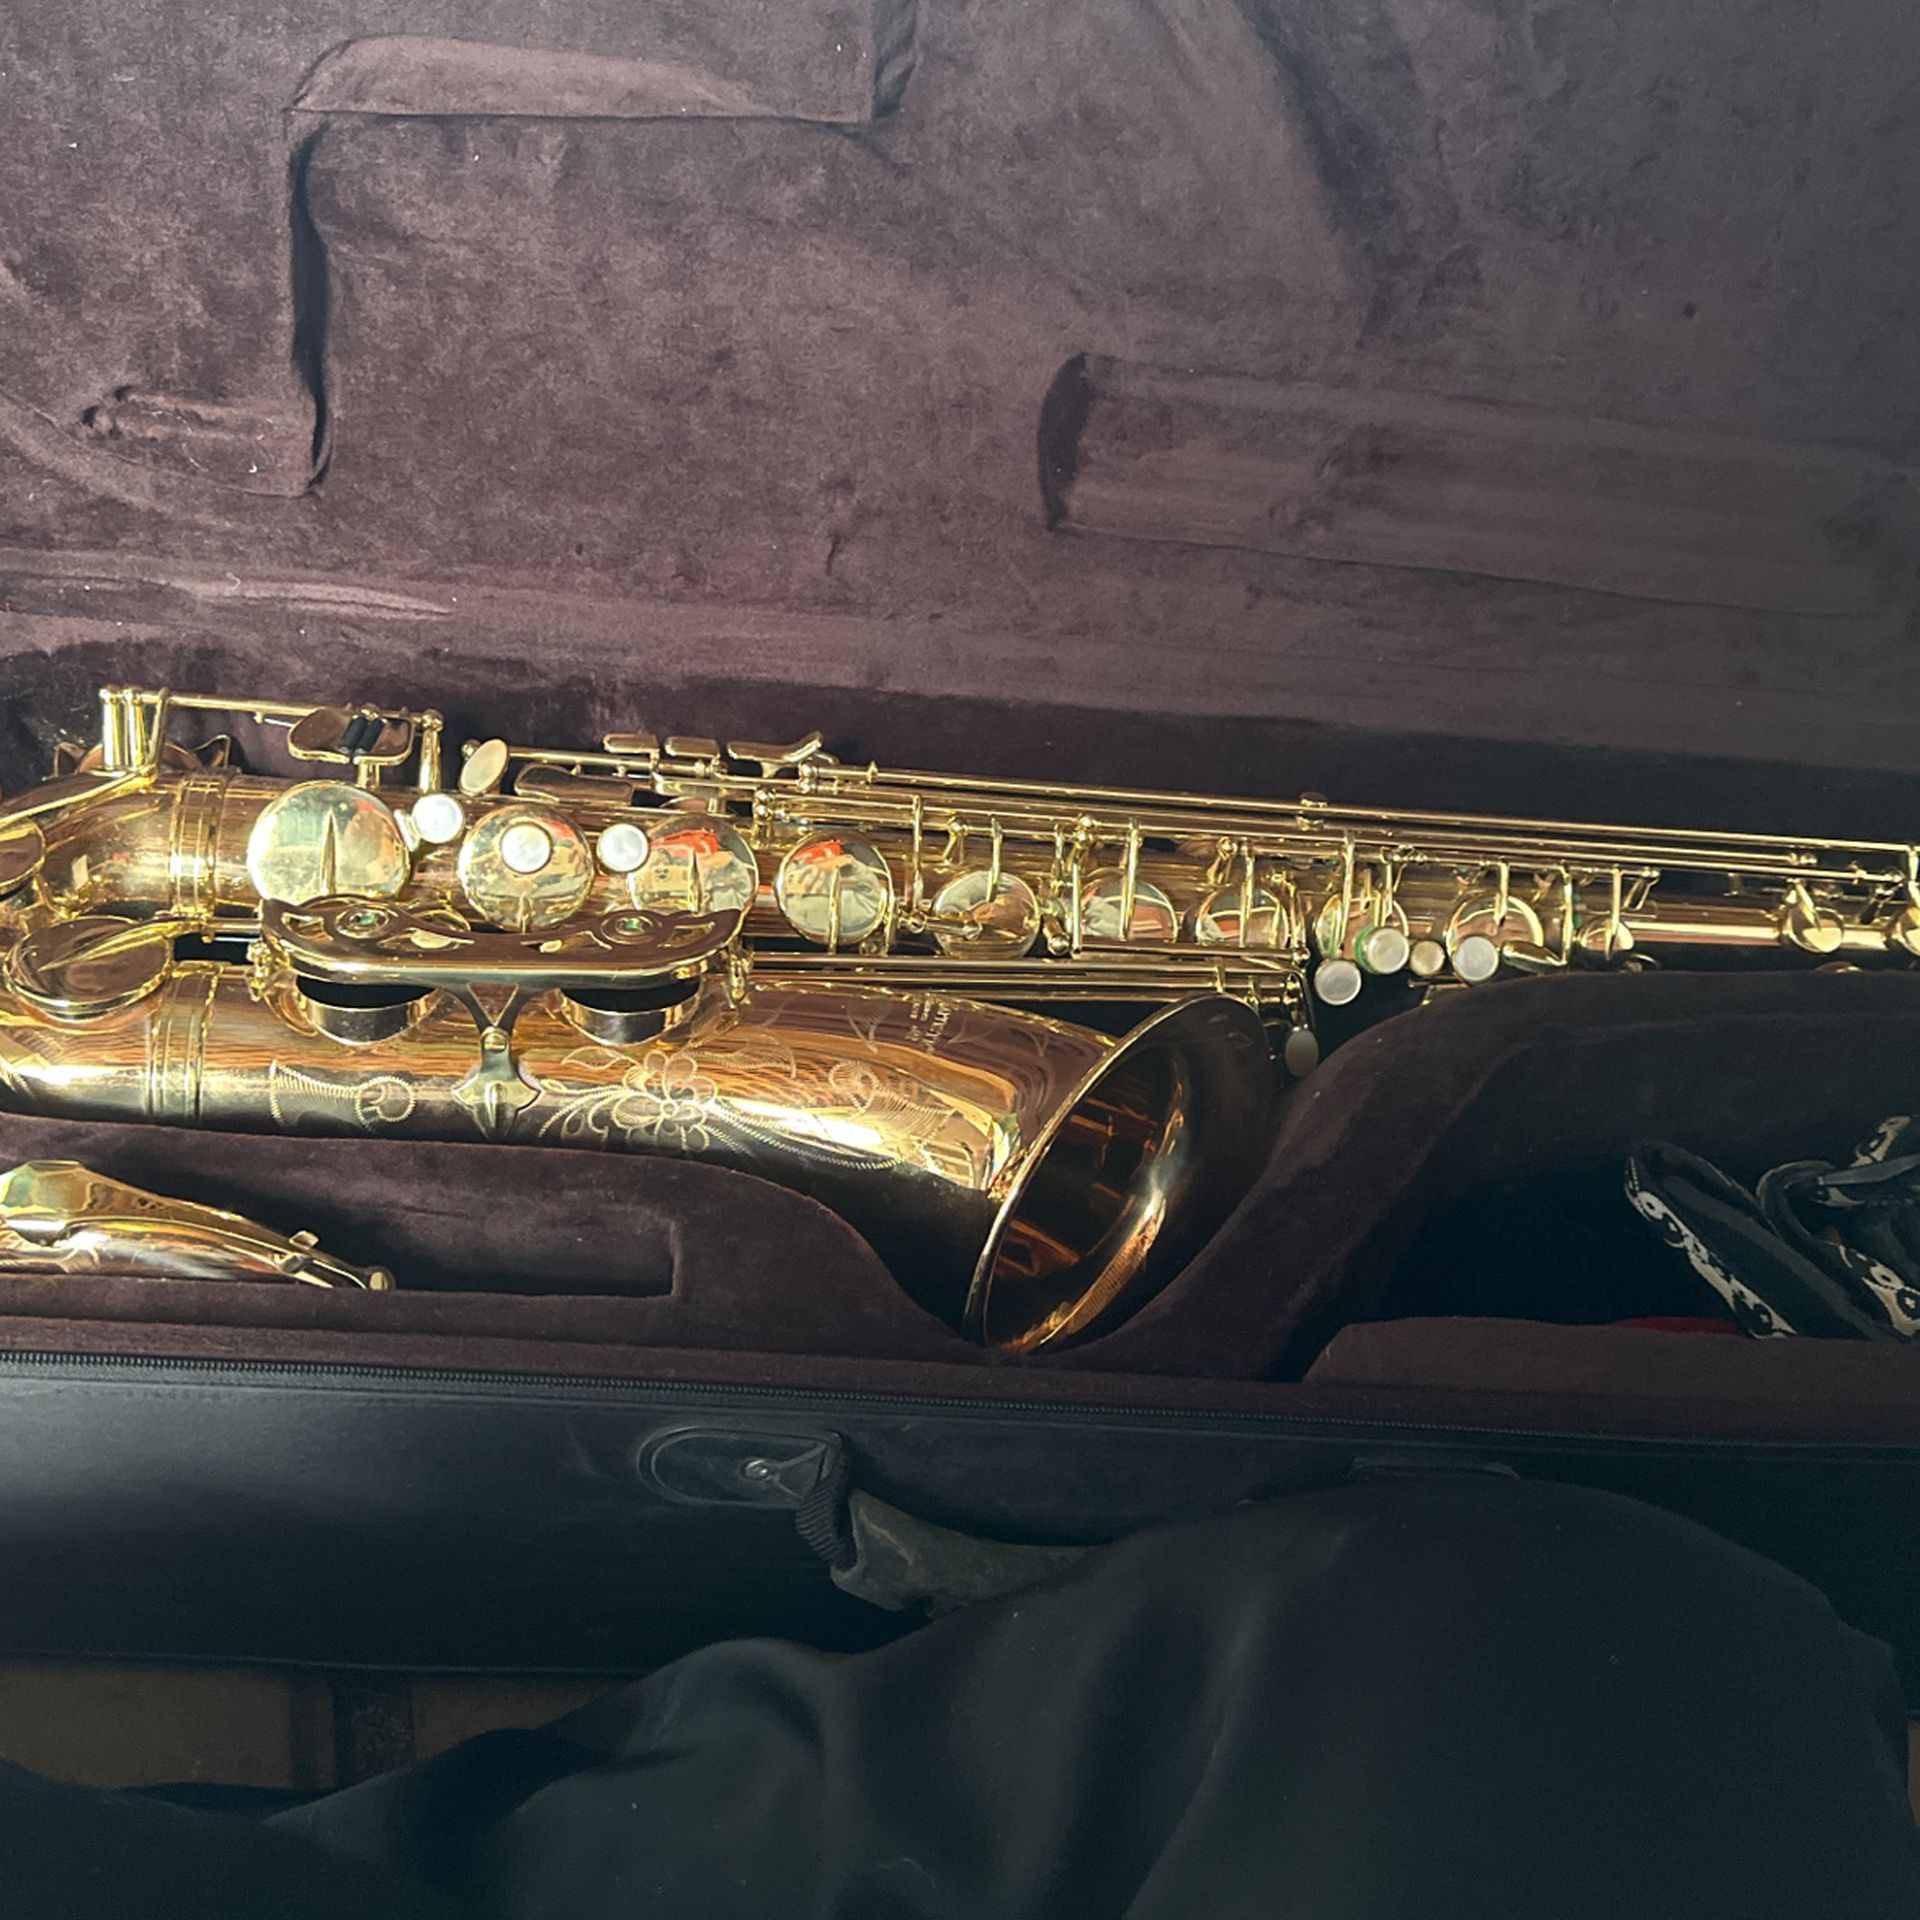 Jean Baptiste Saxophone Need Gone ASAP